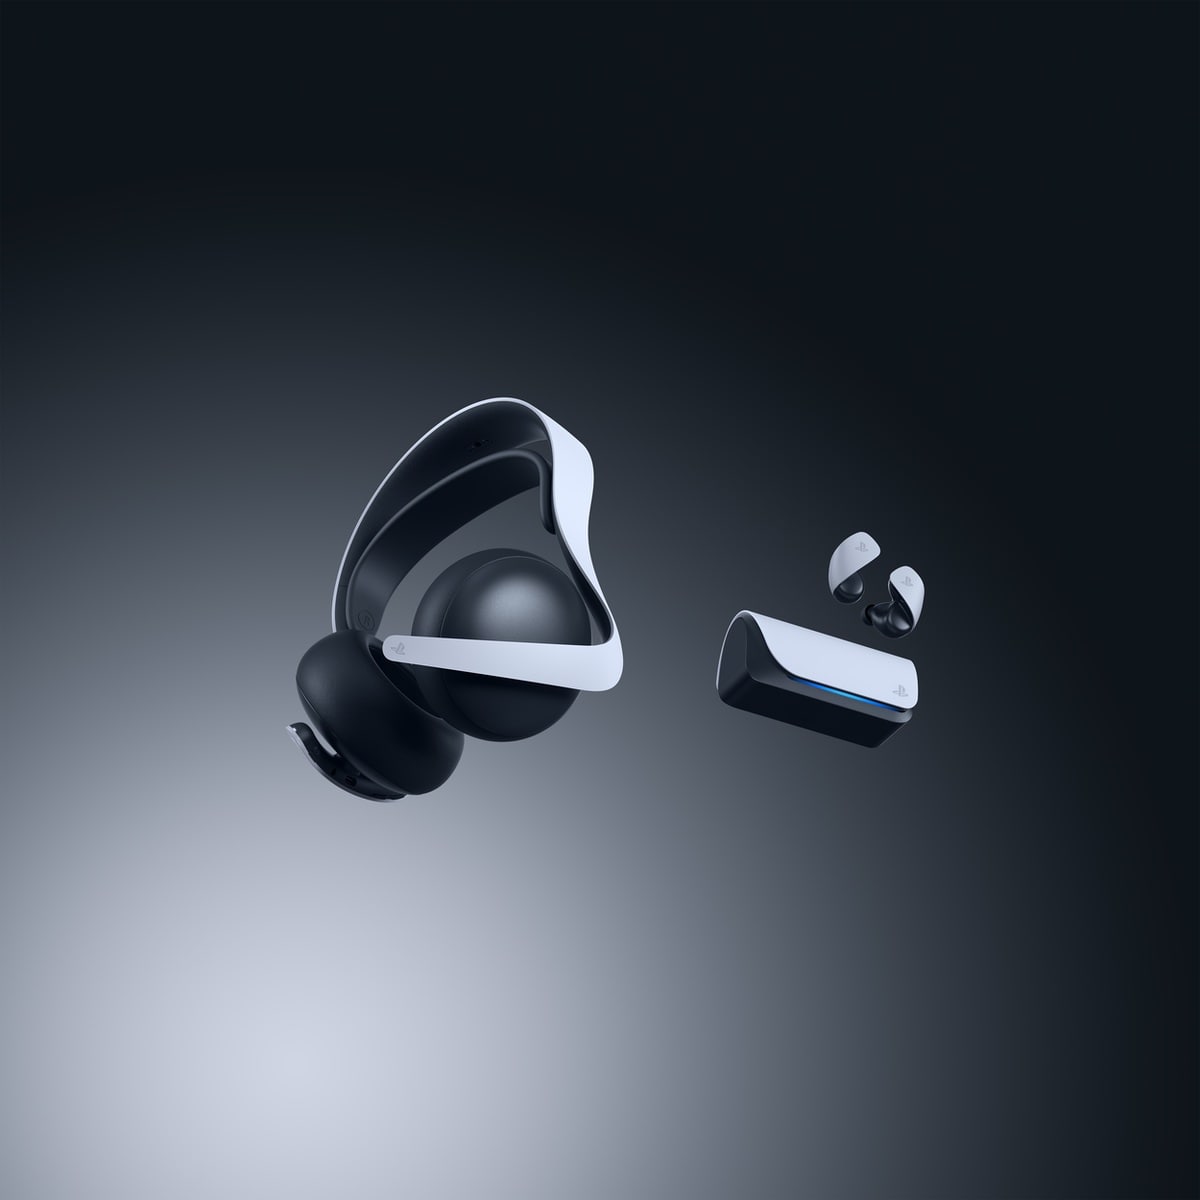 Bezprzewodowe słuchawki PULSE Elite i bezprzewodowe słuchawki douszne PULSE Explore można zamawiać od listopada